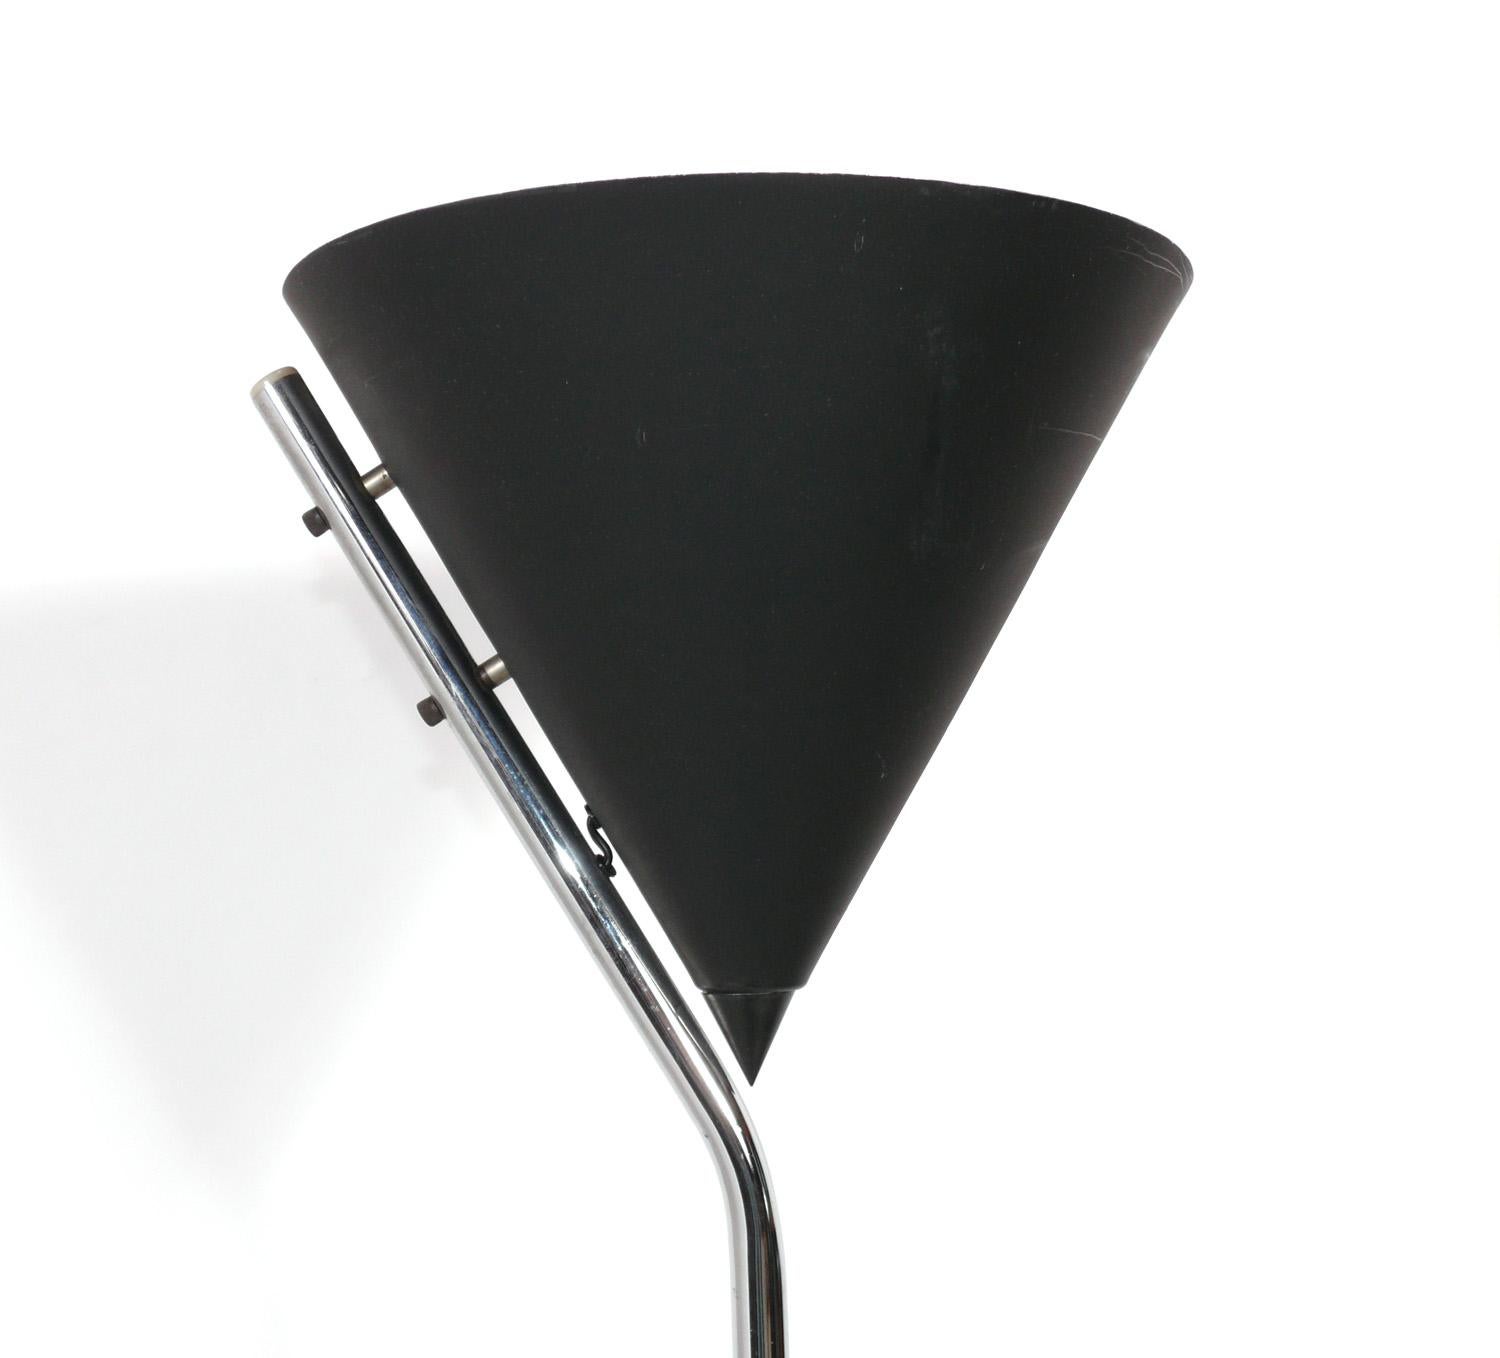 Skulpturale Stehlampe in Schwarz und Chrom, entworfen von Robert Sonneman, Amerikaner, ca. 1970er Jahre. Es wurde neu verkabelt und ist sofort einsatzbereit.